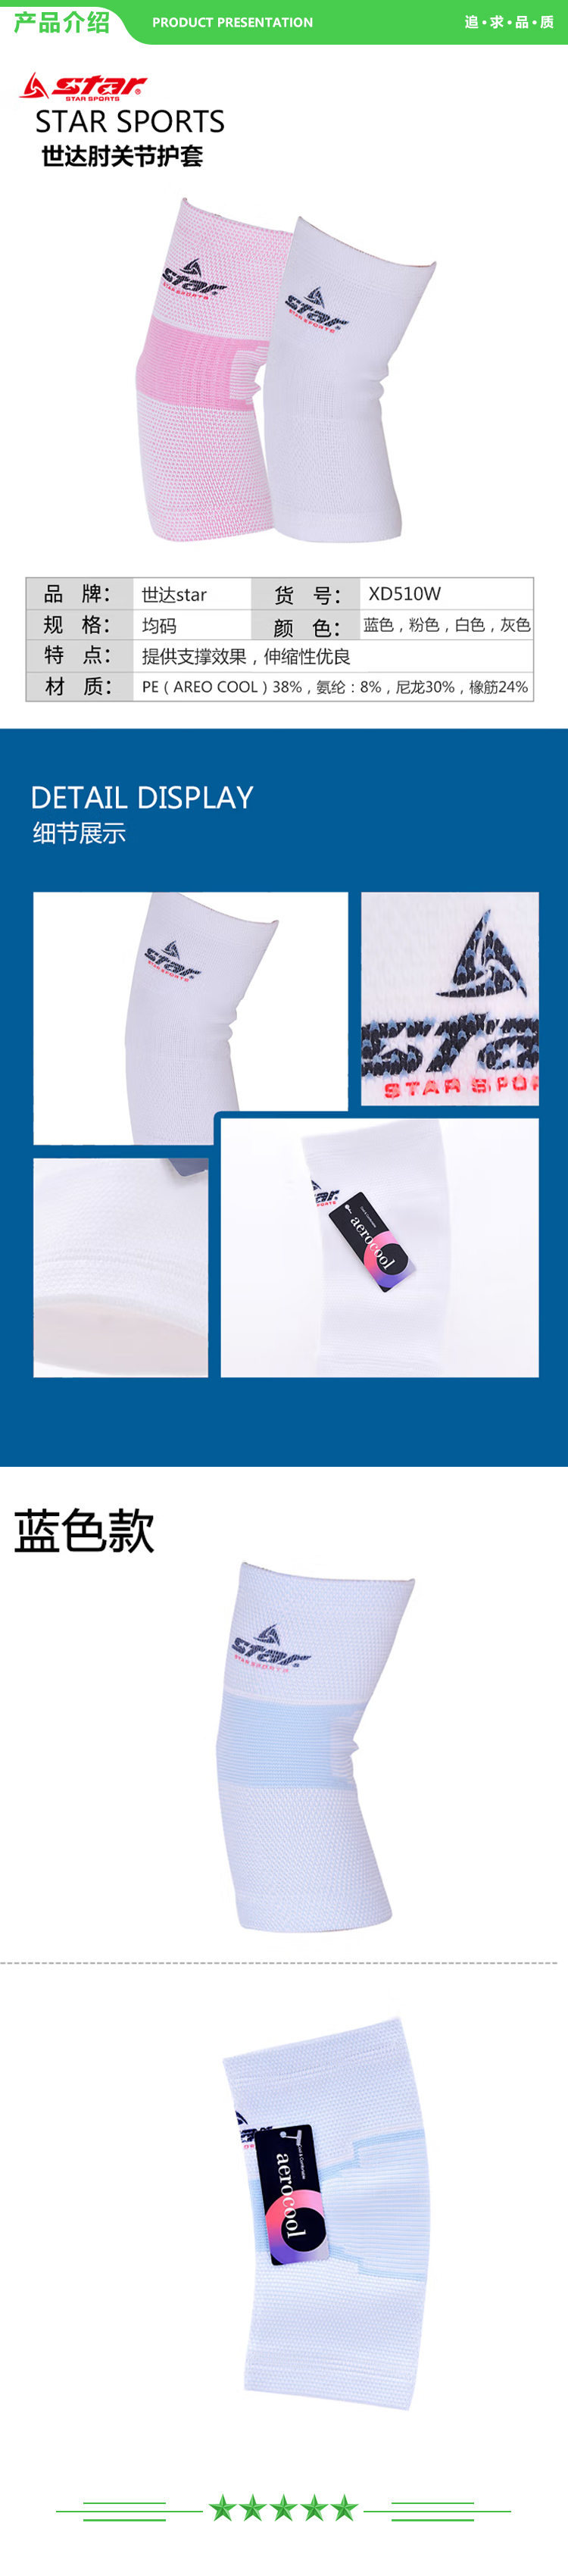 世达 star XD510W-19 蓝色 均码 护肘运动护具防护保暖肘关节保护 一只装  .jpg